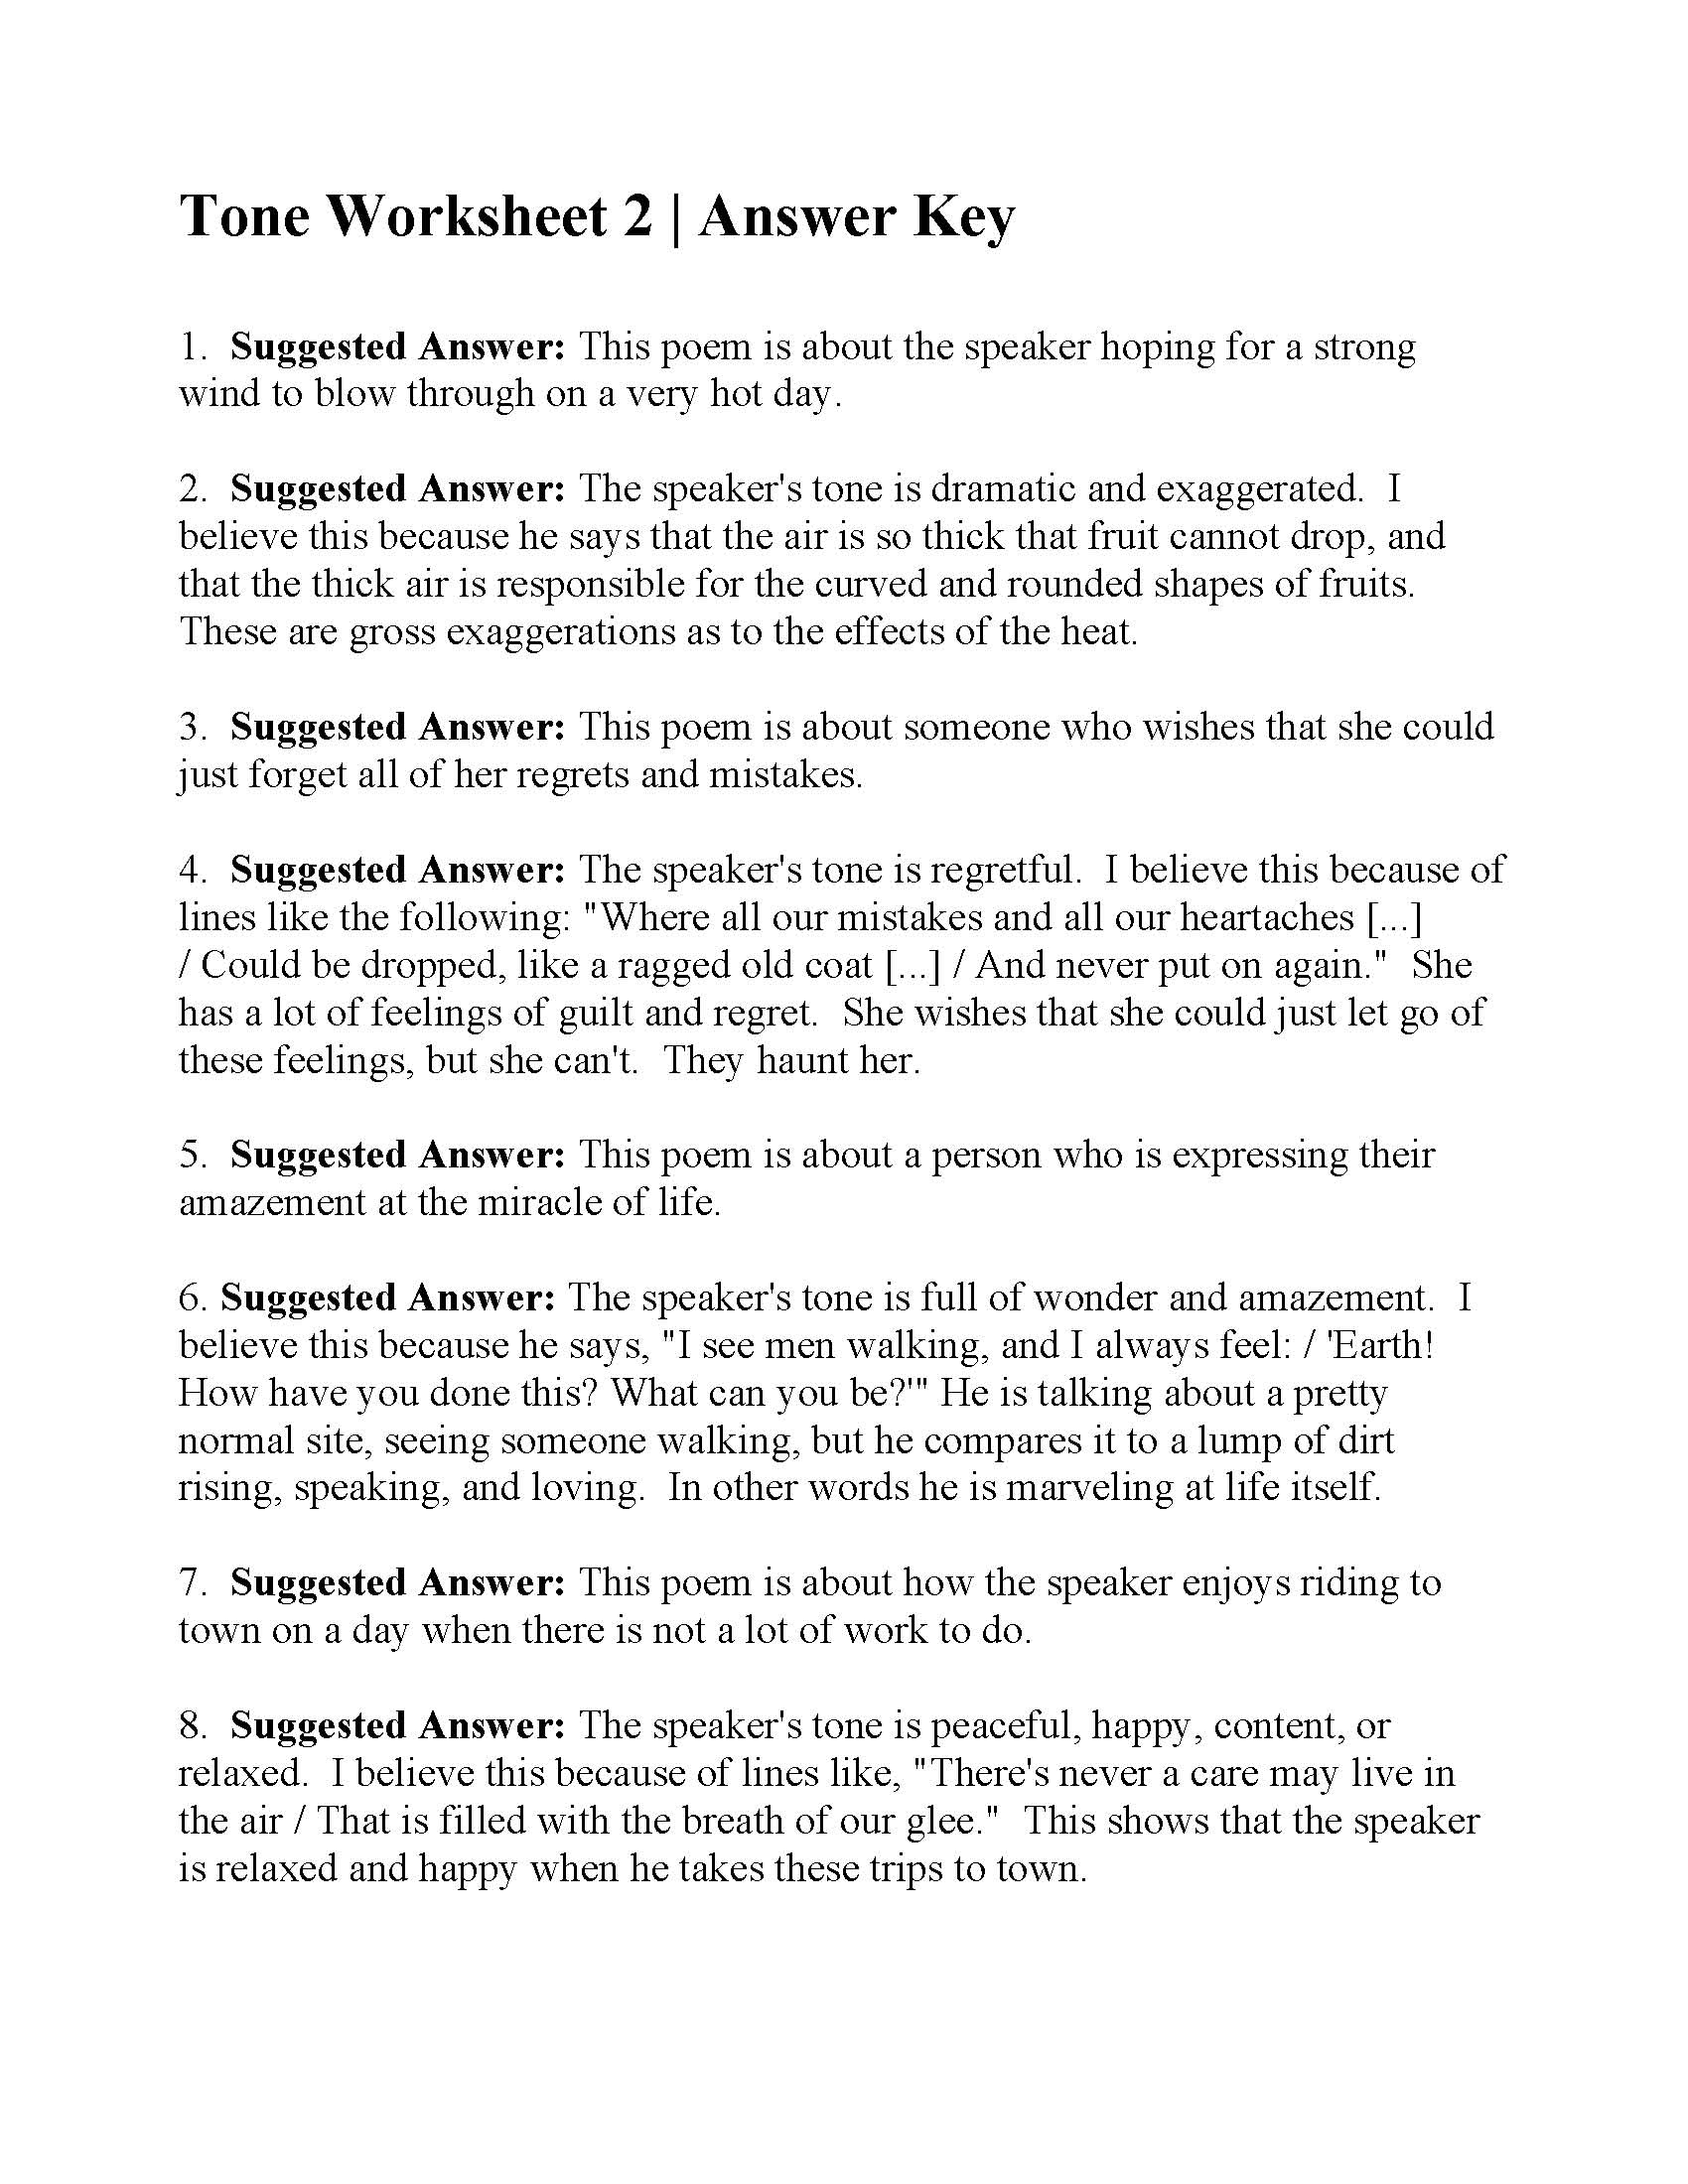 Mistakes & Regrets Worksheet 